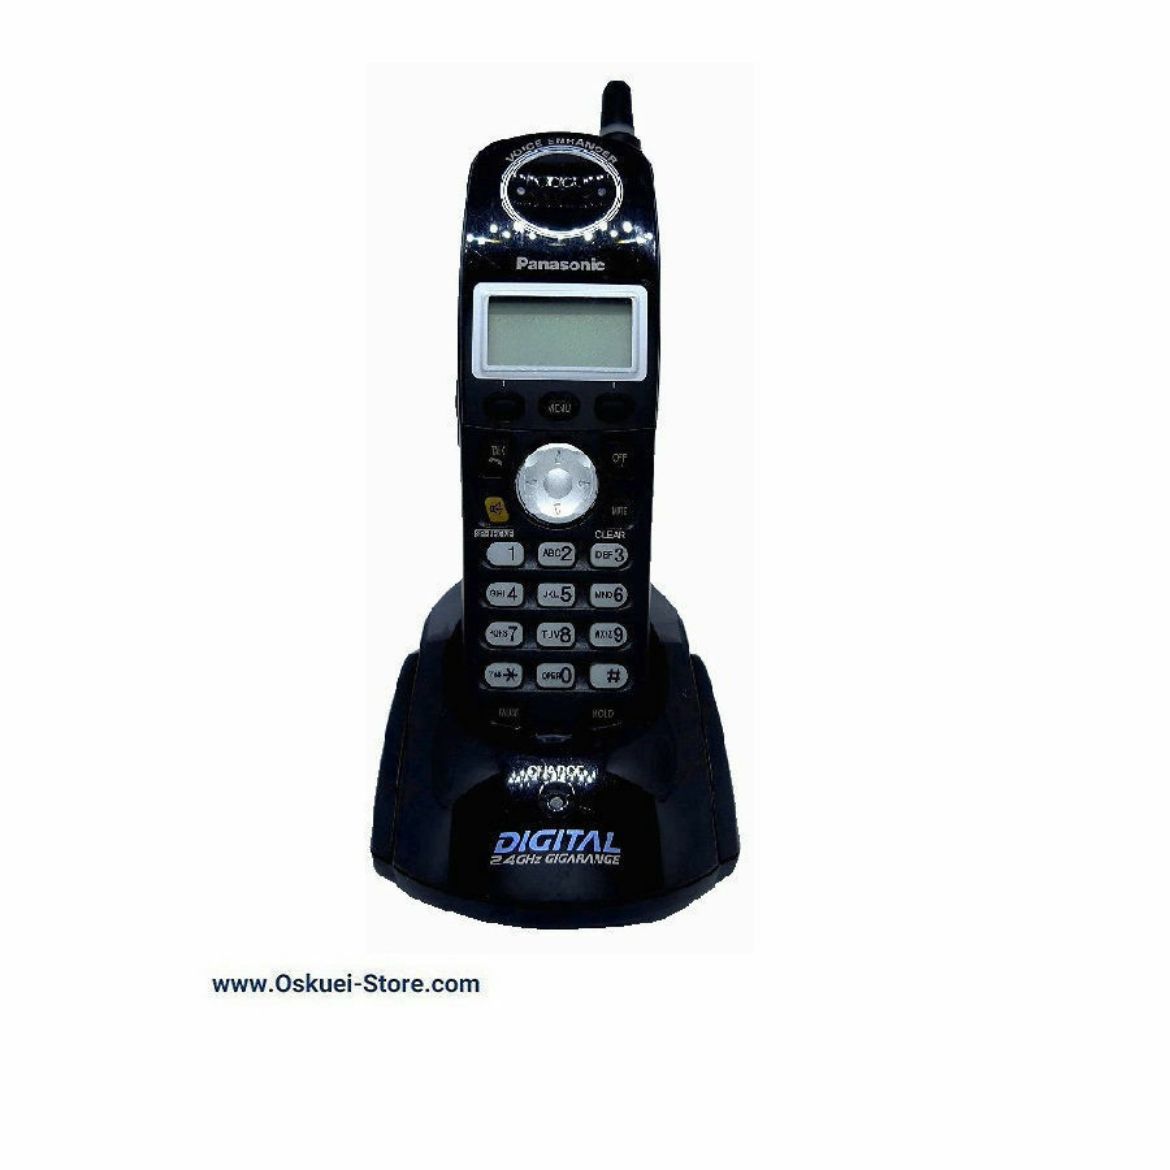 Panasonic KX-TGA242 Cordless Telephone Black